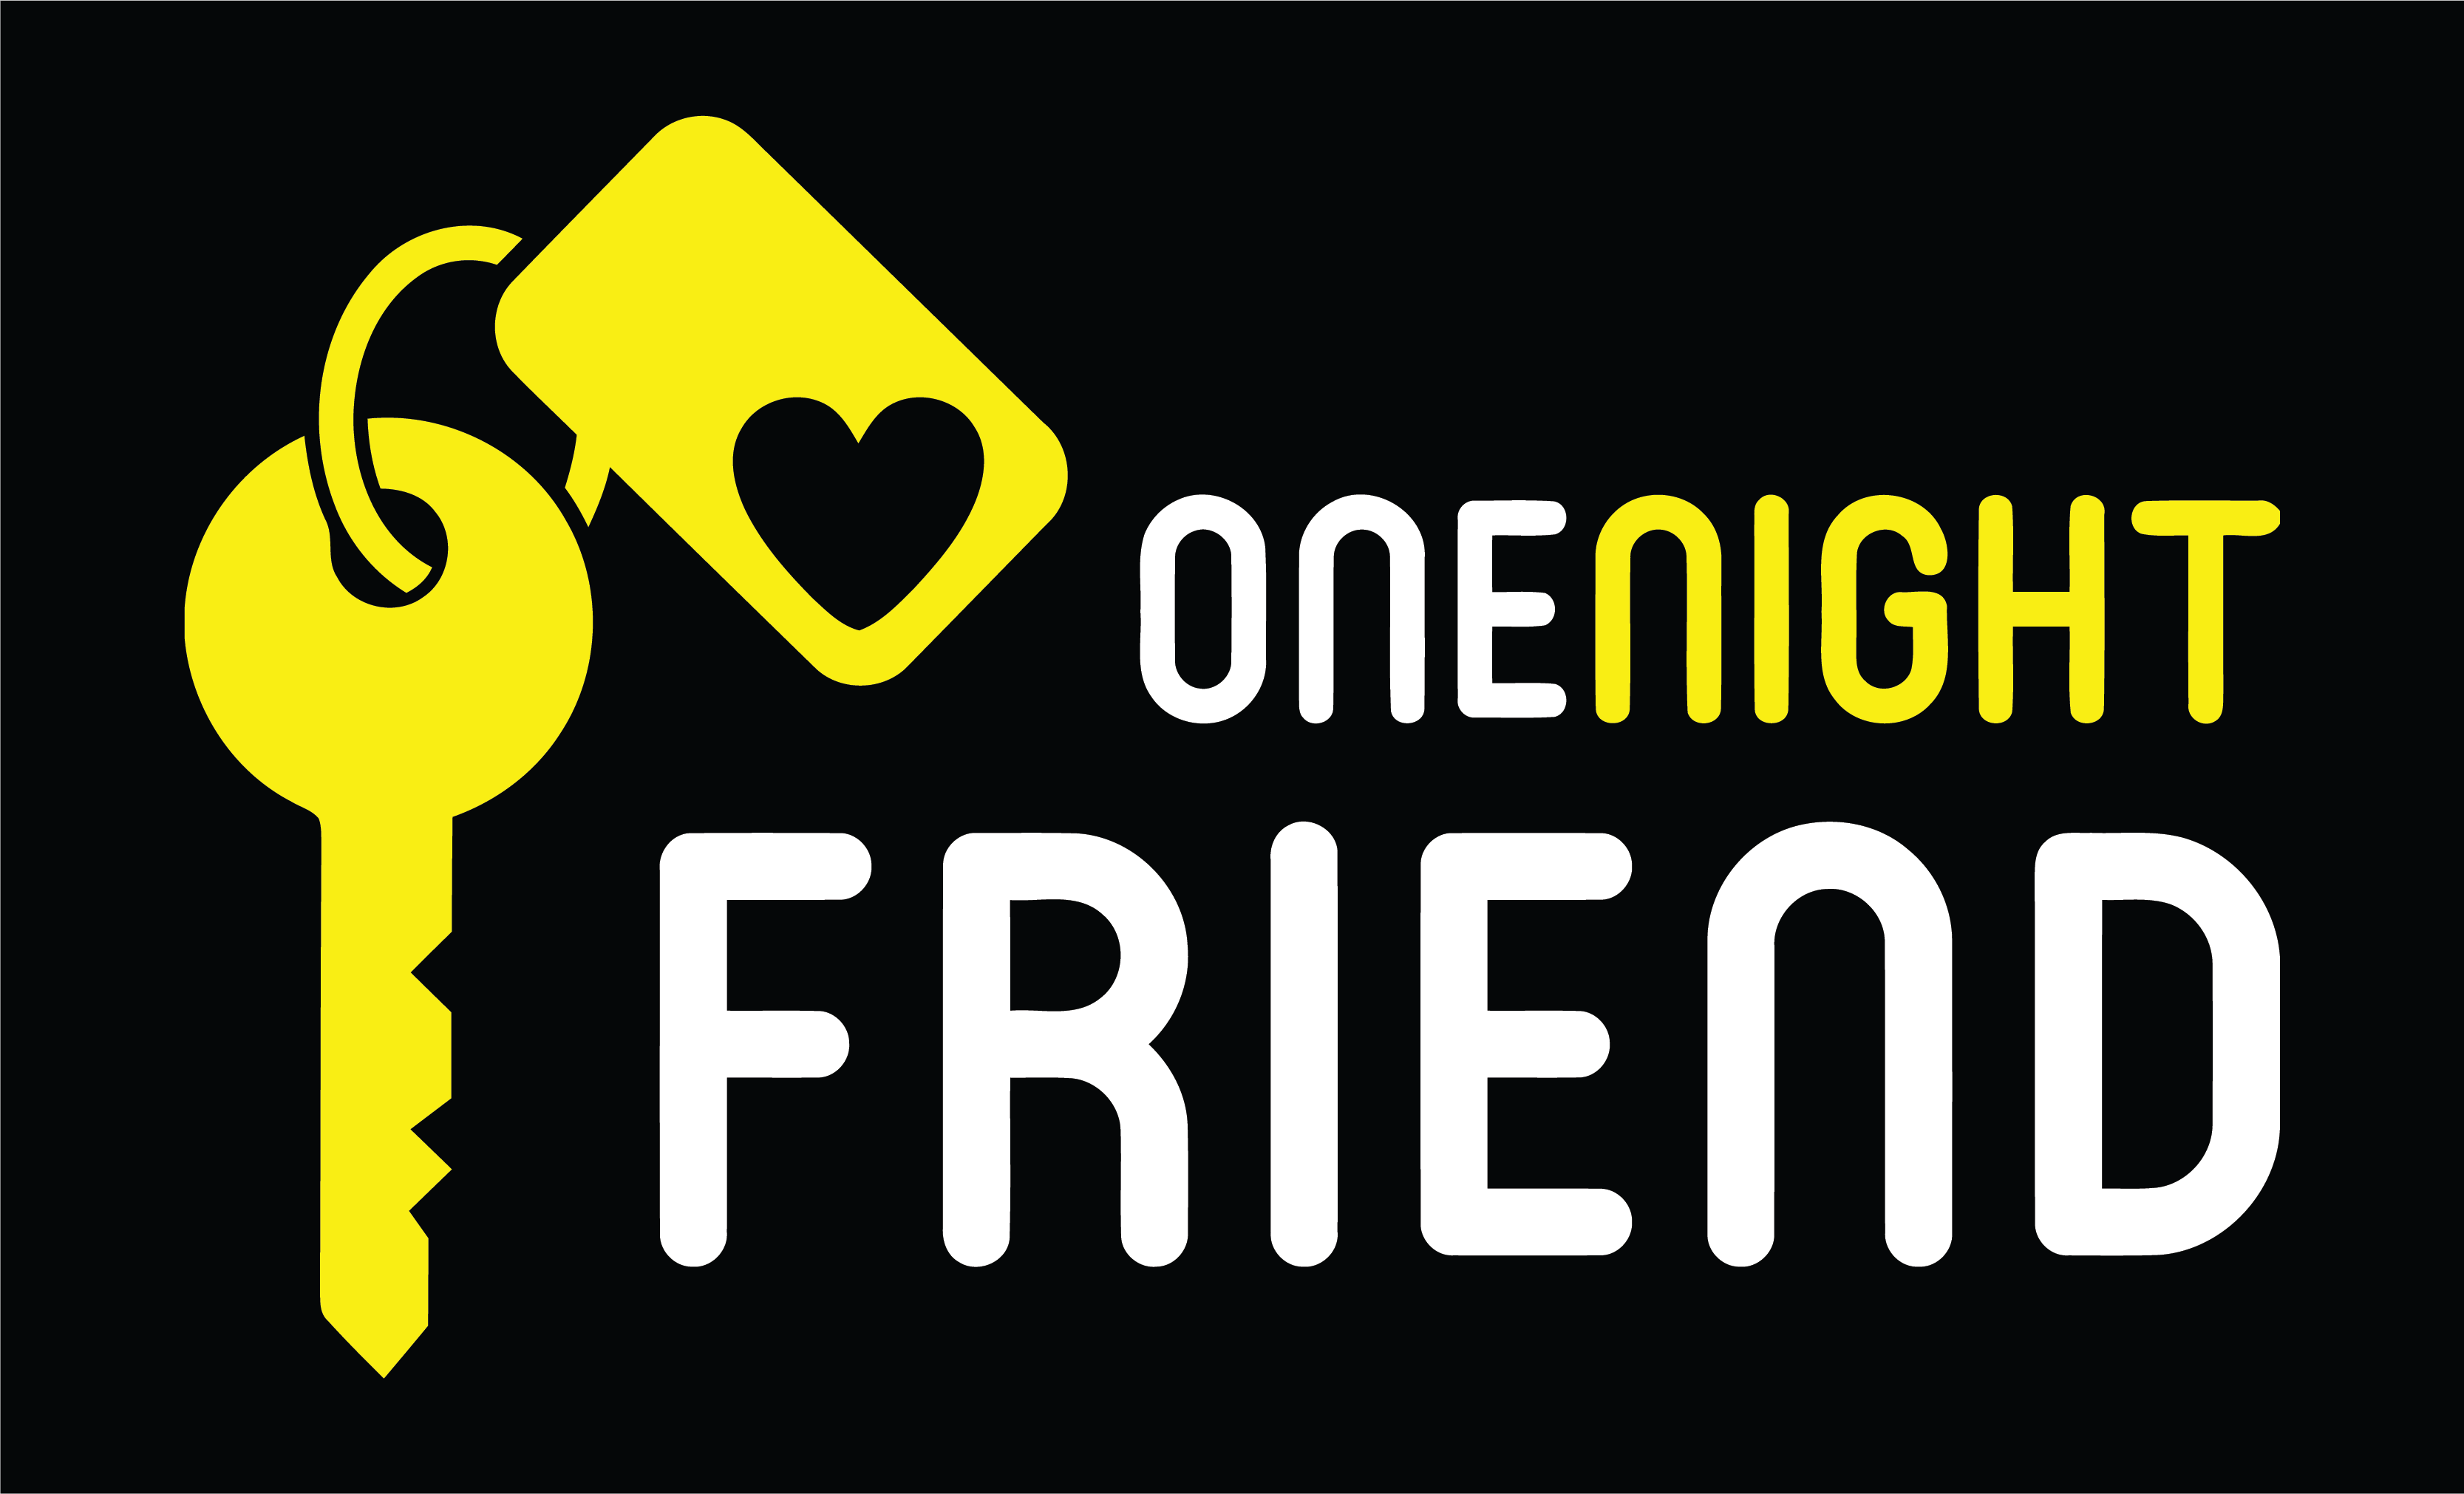 OneNightFriend-logo